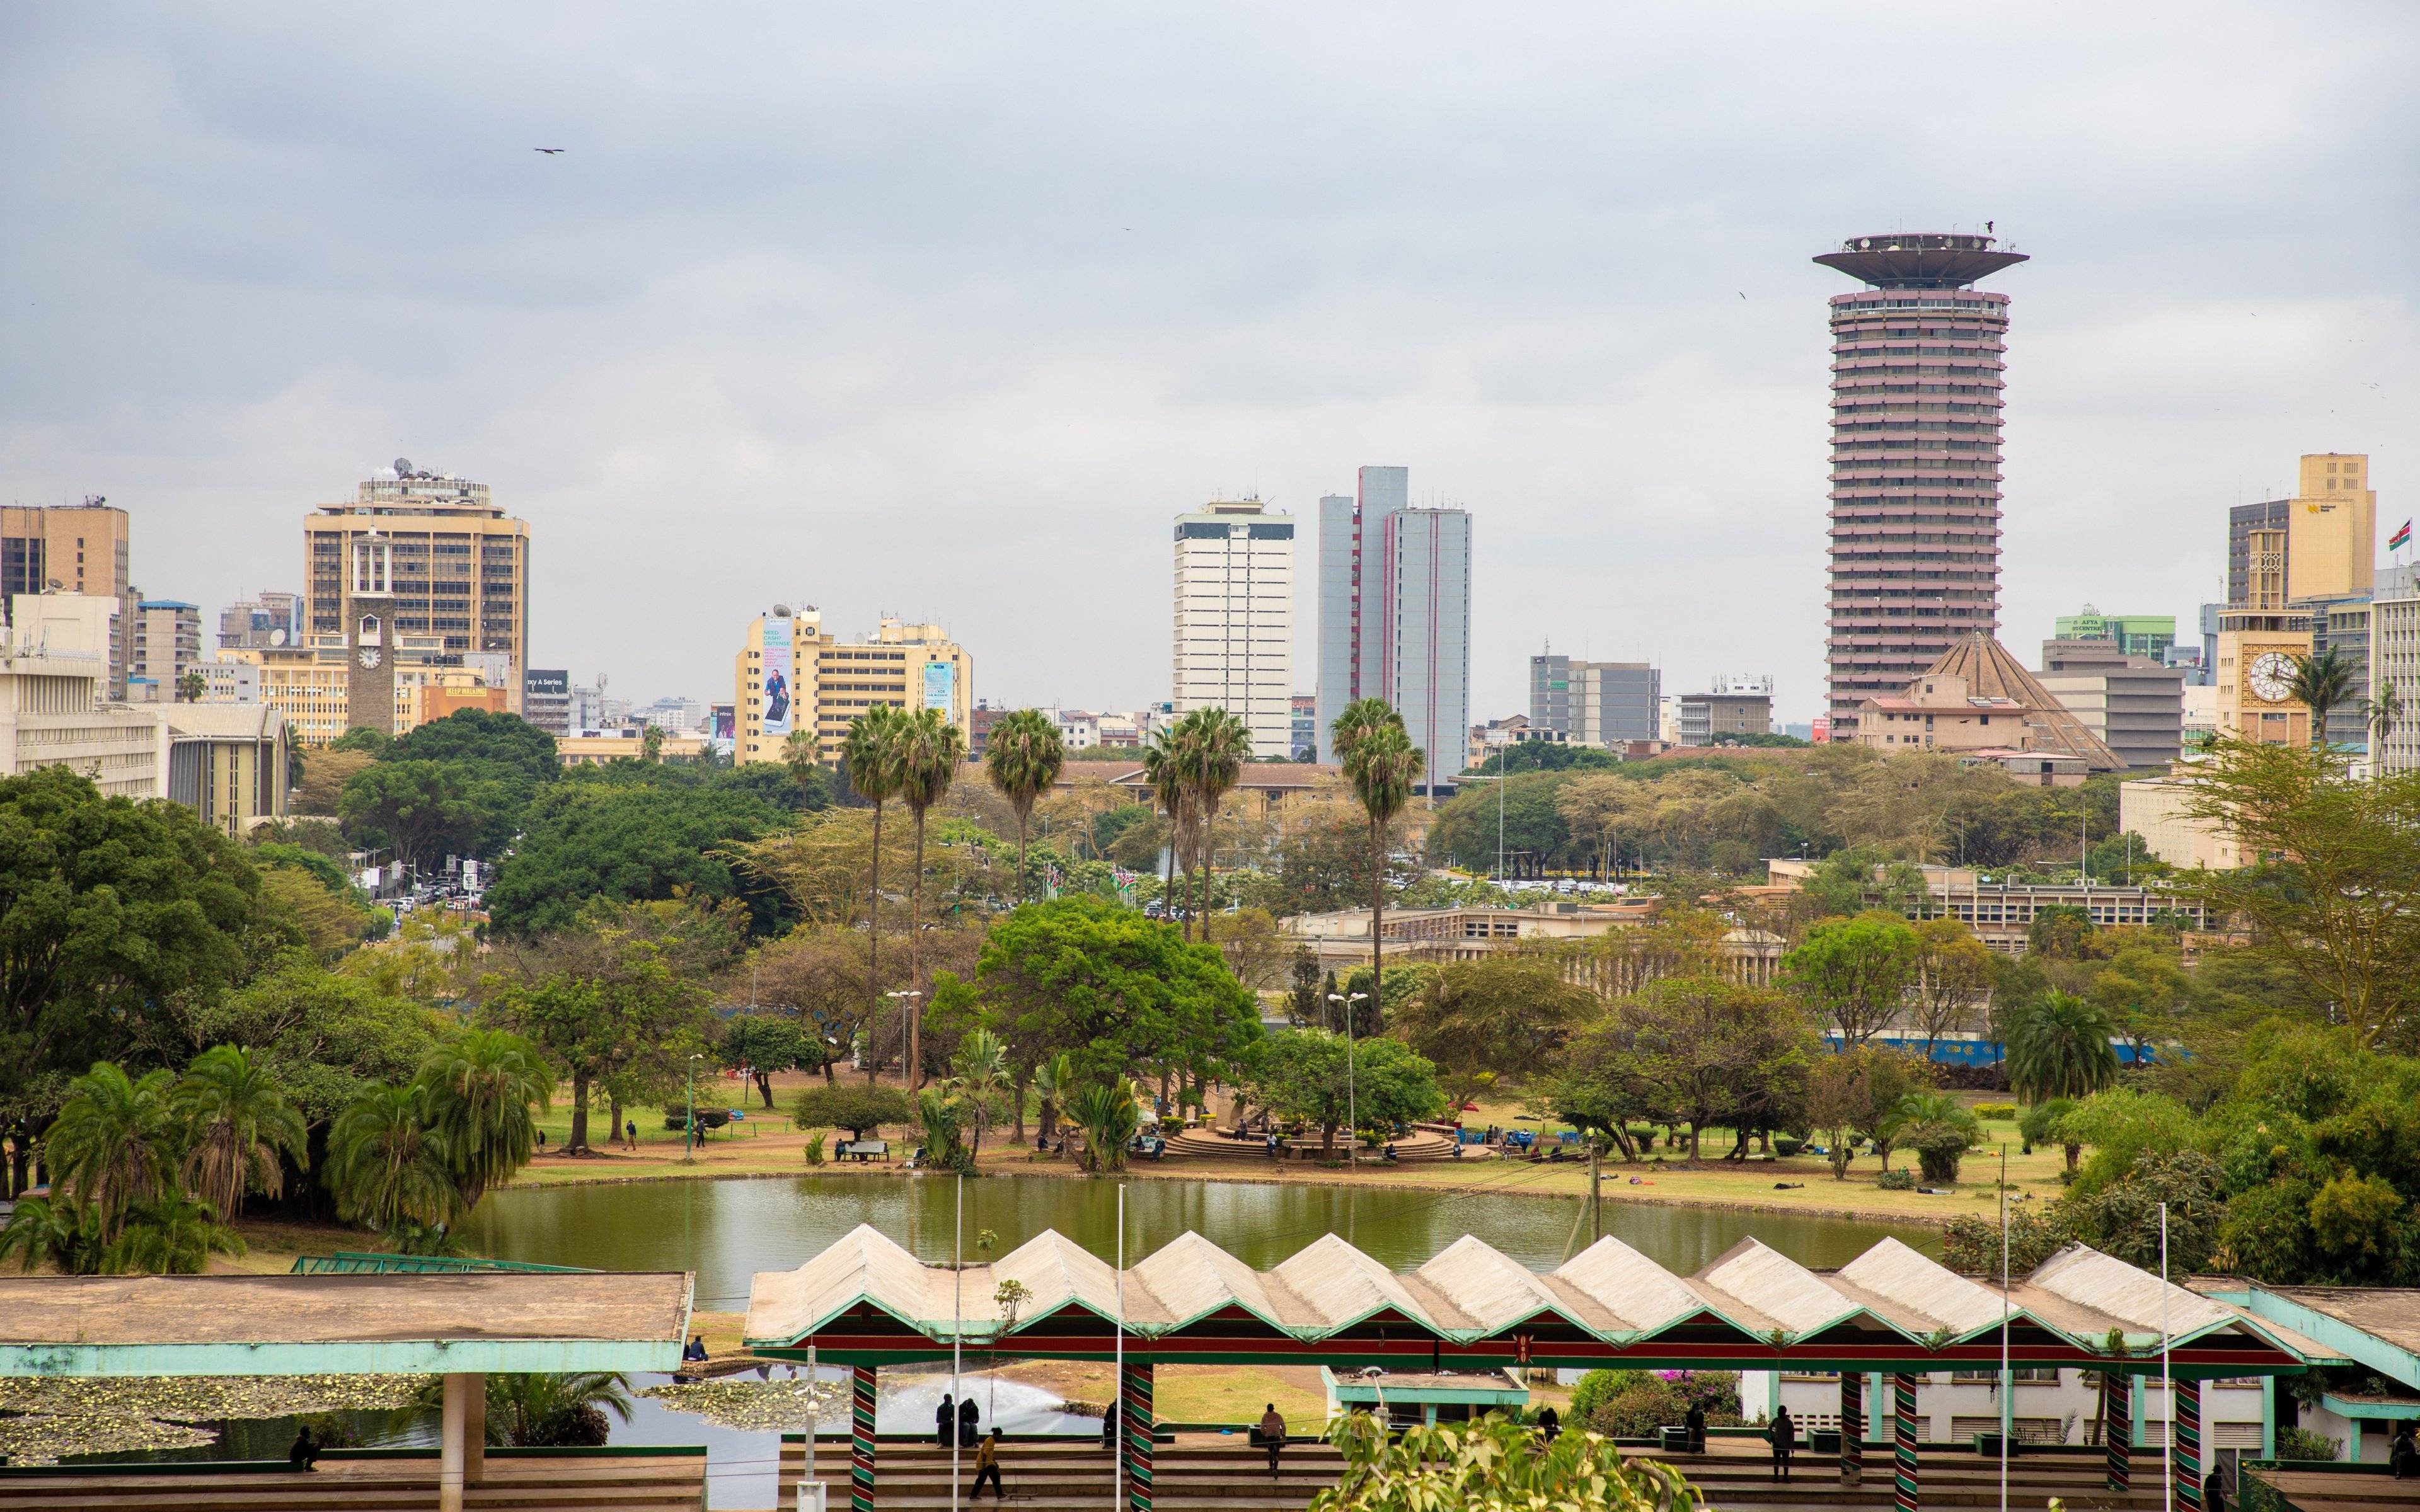 Bienvenido a Nairobi, la única capital de la vida salvaje